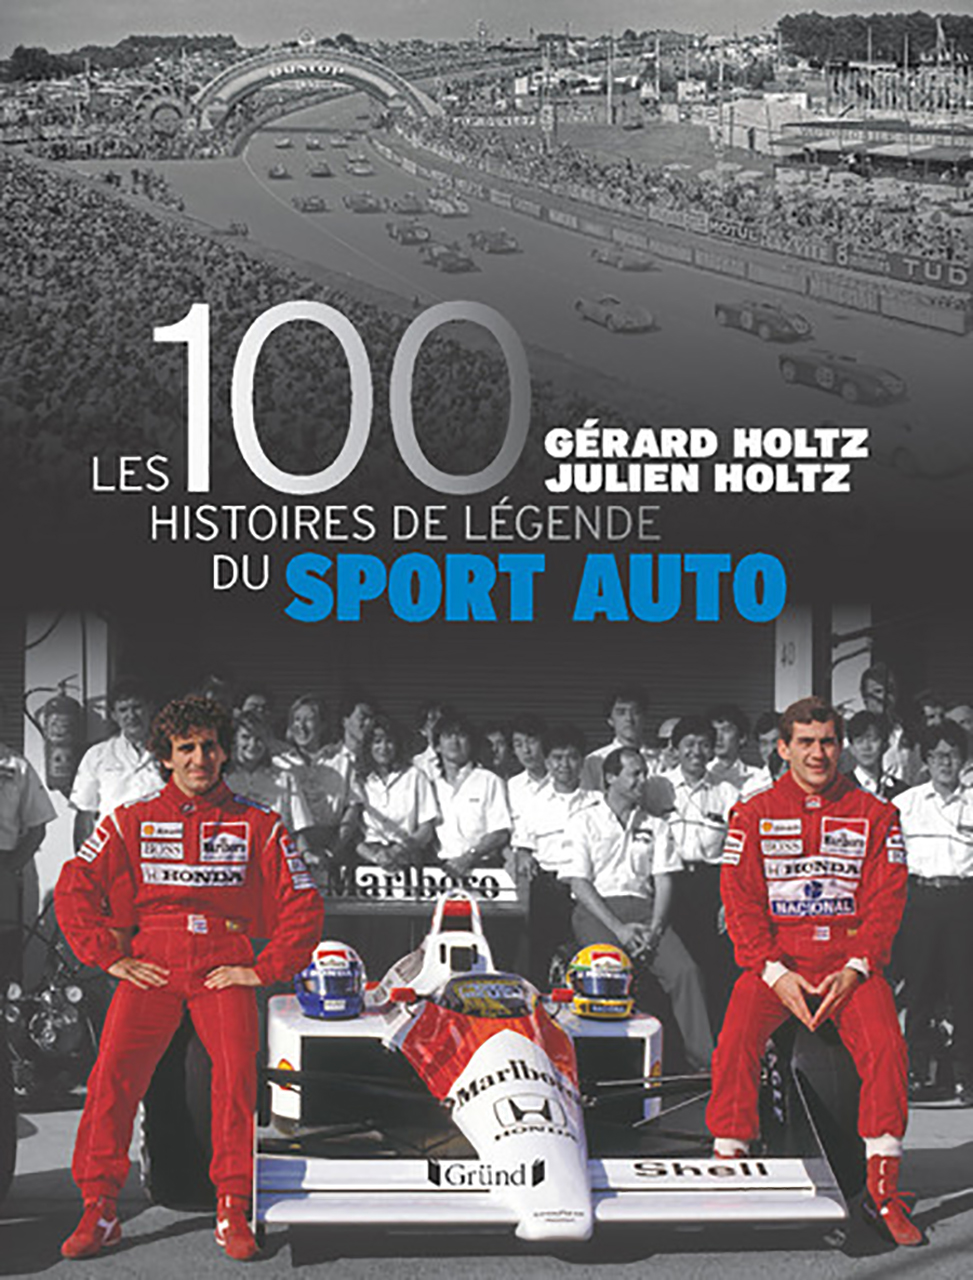 100 histoires de legende du sport auto